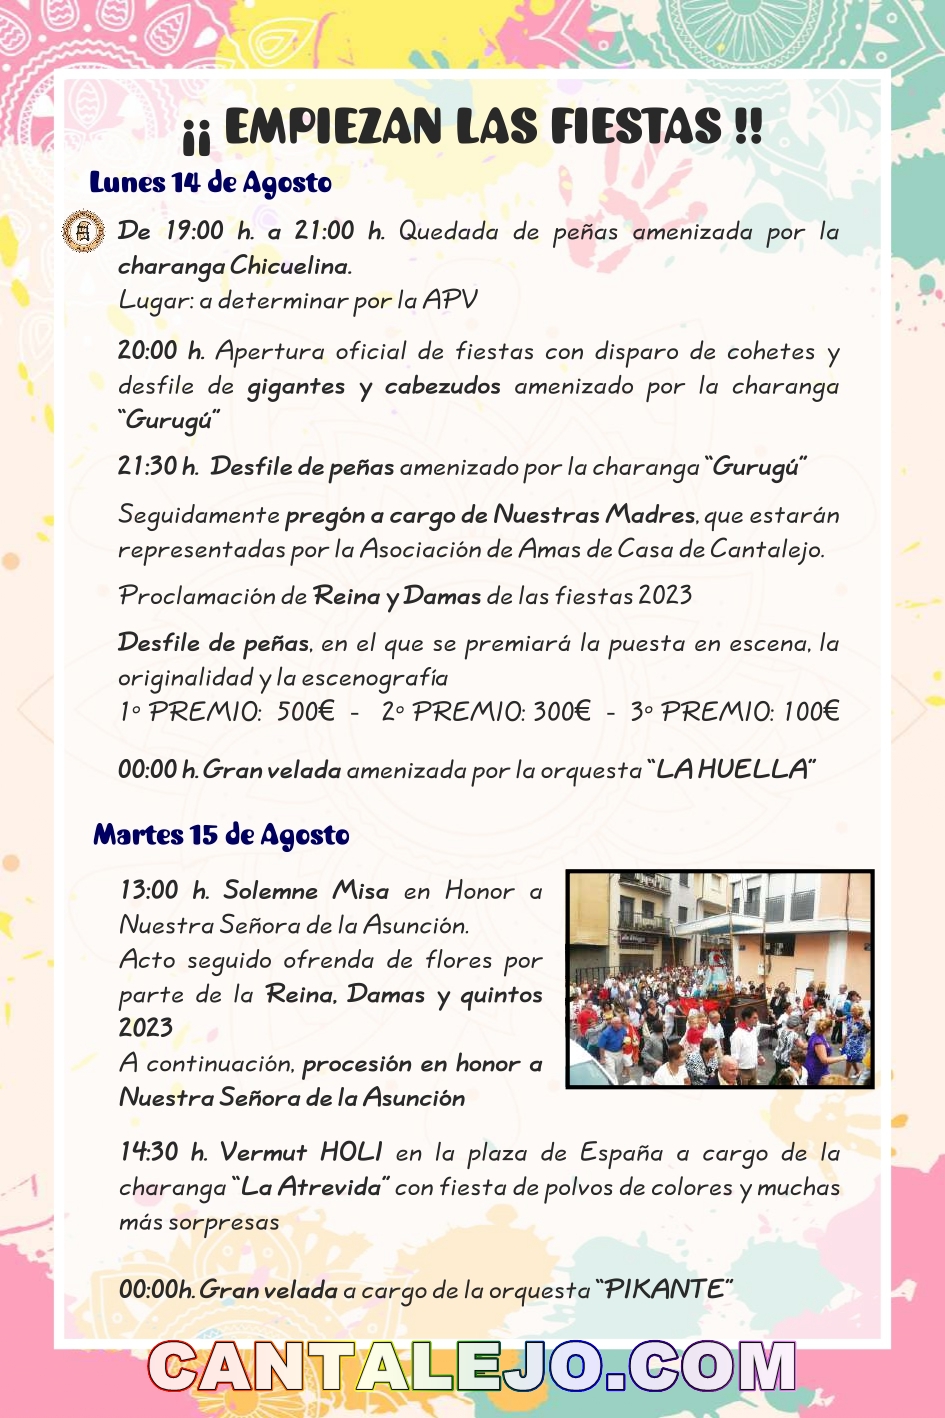 Programa de Fiestas 2023 CANTALEJO-COM-29